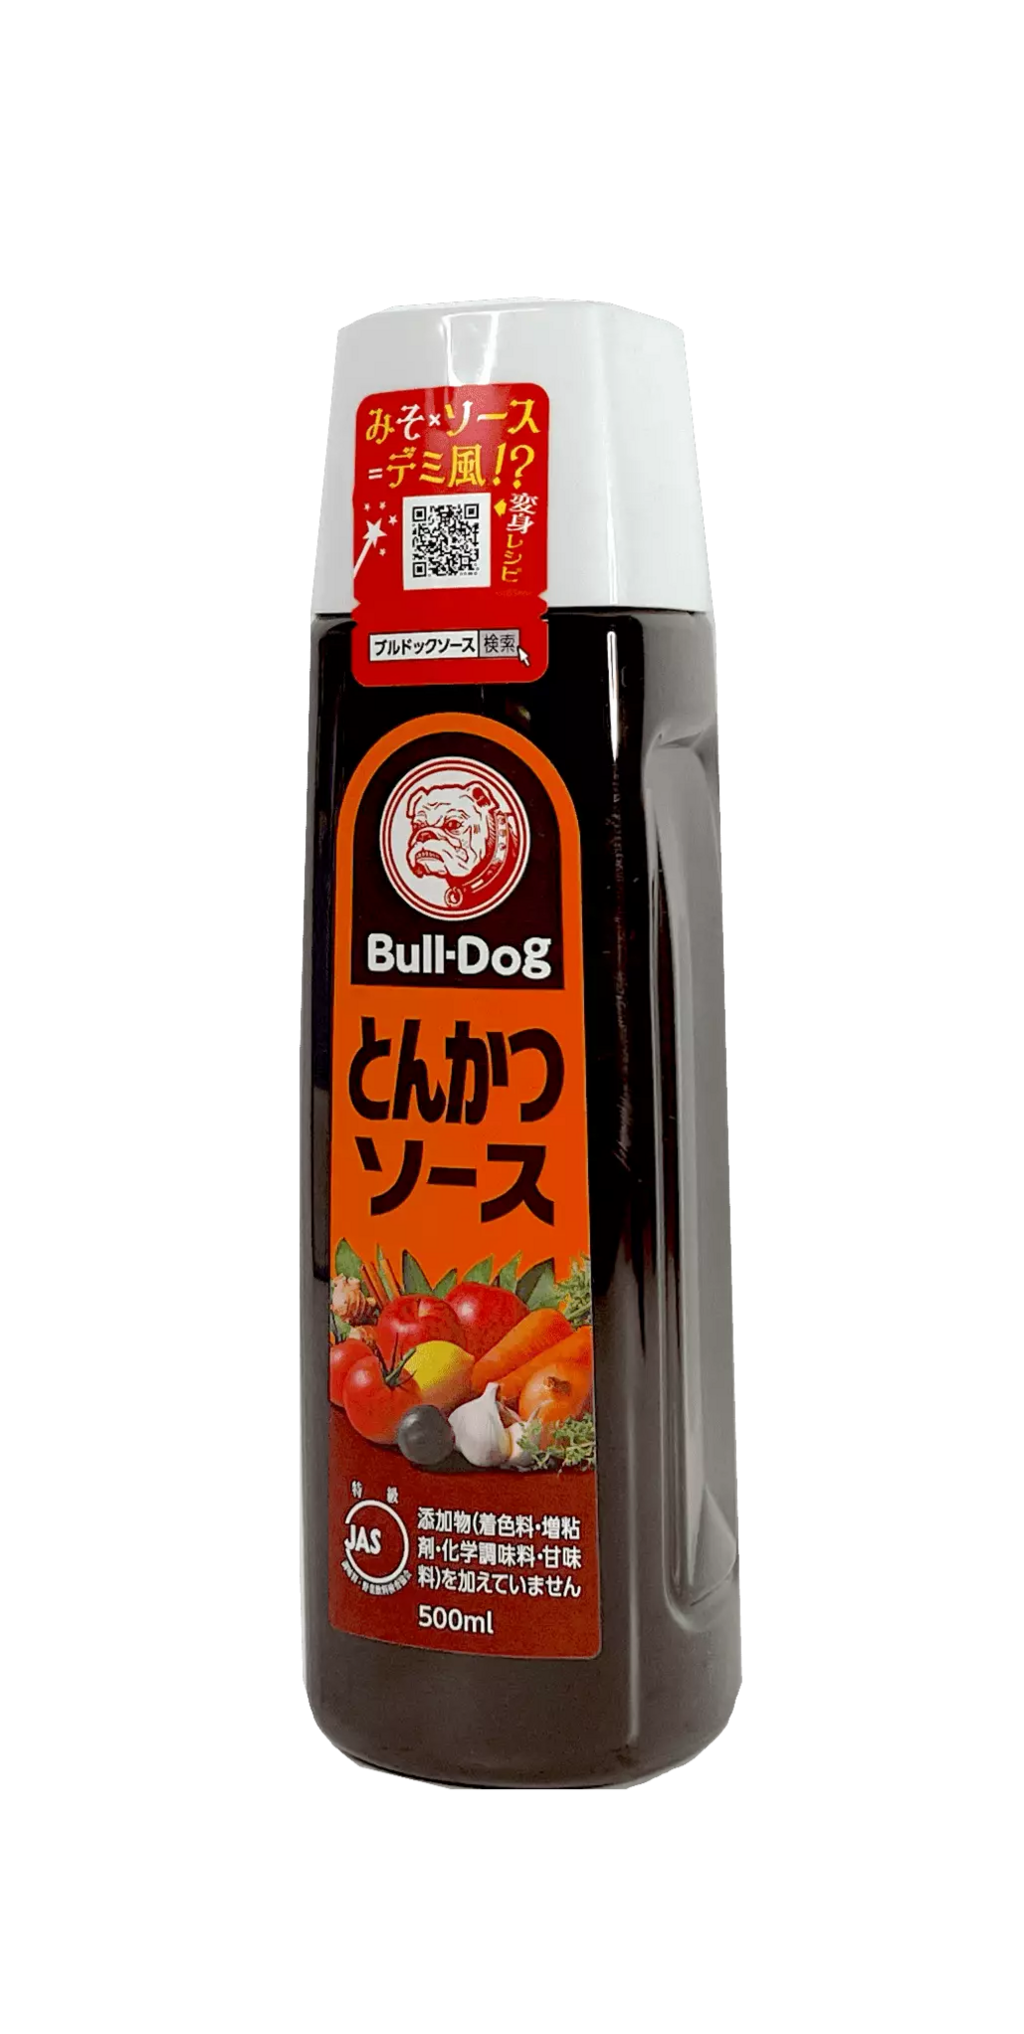 Tonkatsu Sauce 500ml Bull-Dog Japan